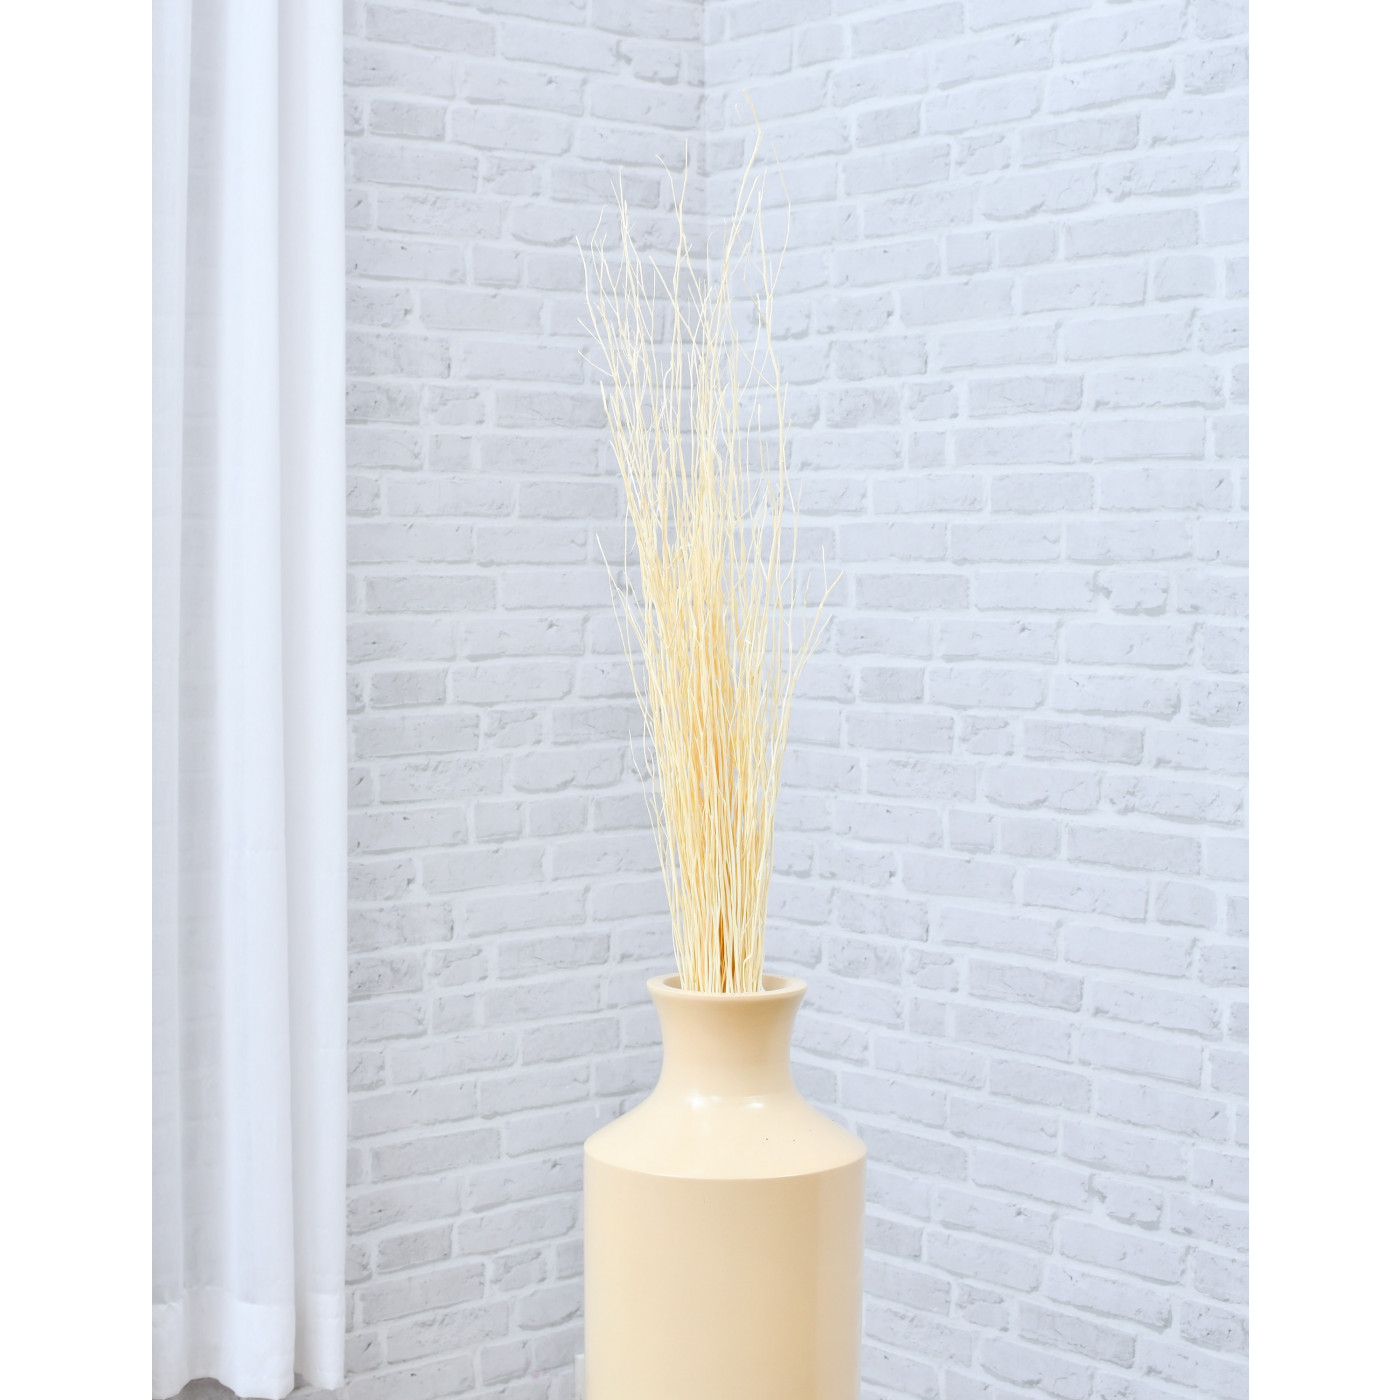 LEEWADEE Mazzo per Vaso da Pavimento: 10 Rami Sottili e Sciolti Verde 120 cm Bouquet Decorativo per arredare la casa o Altri Ambienti Interni ed Esterni 